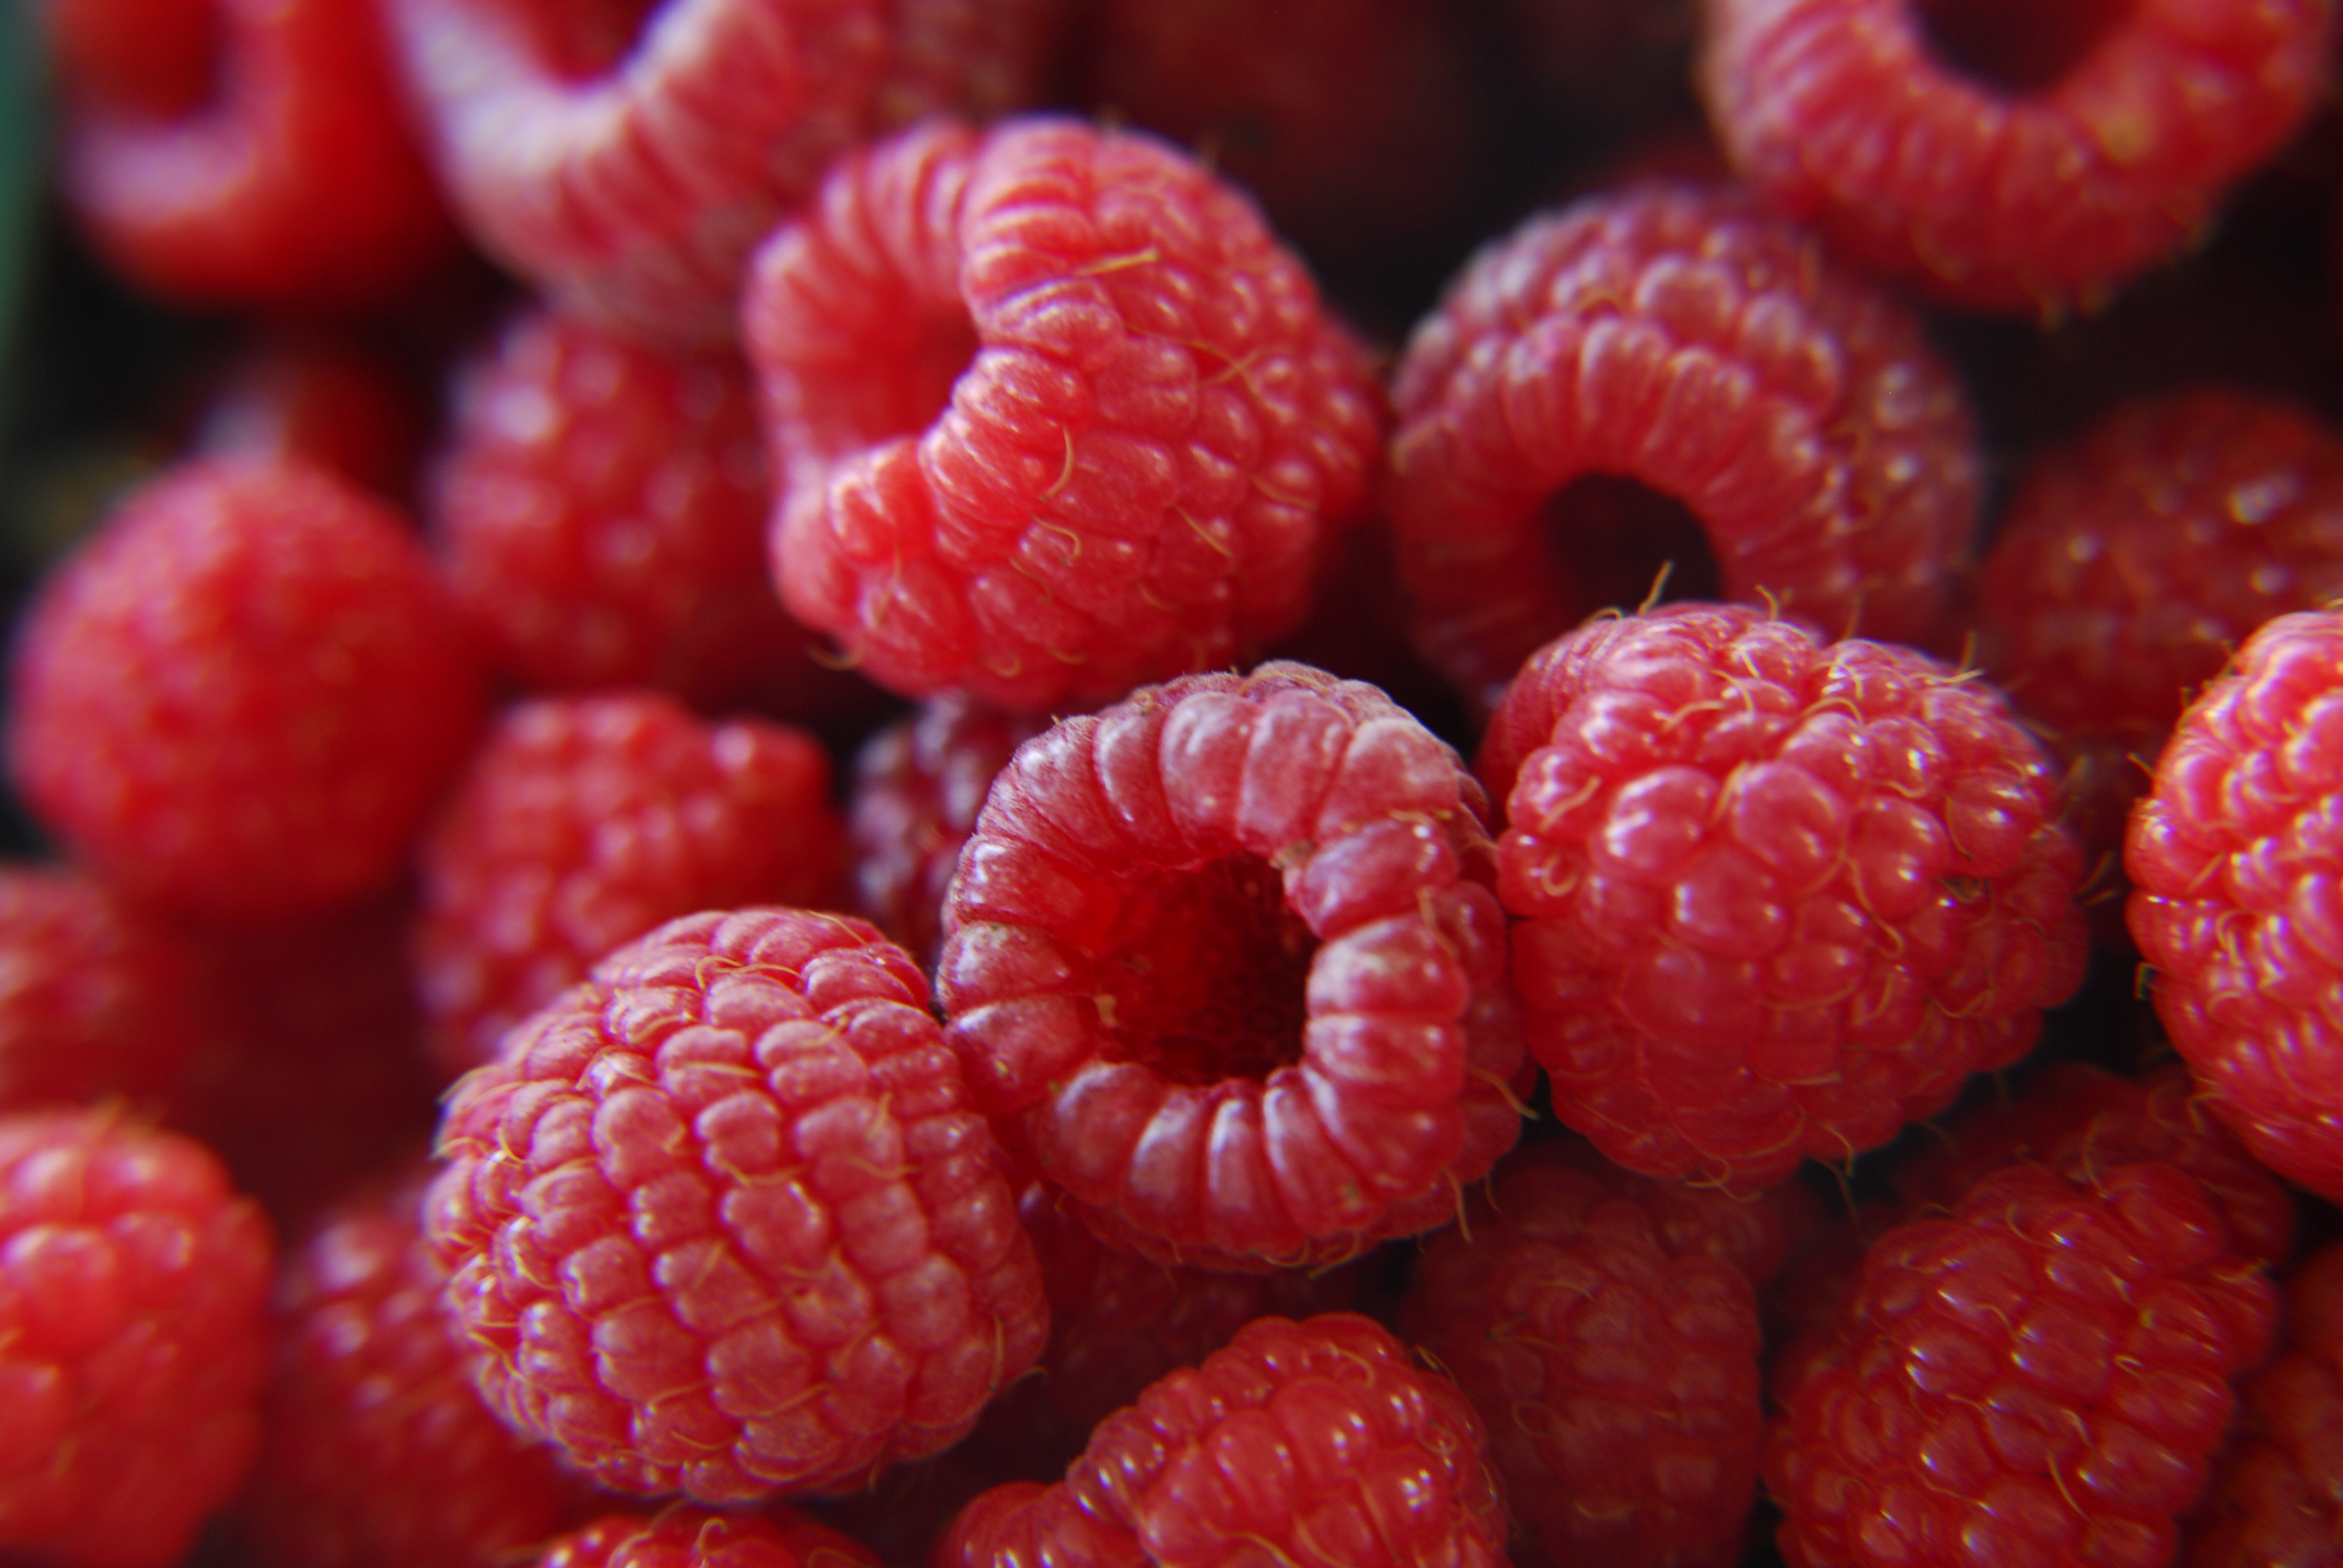 File:Fresh raspberries (272567650).jpg - Wikimedia Commons